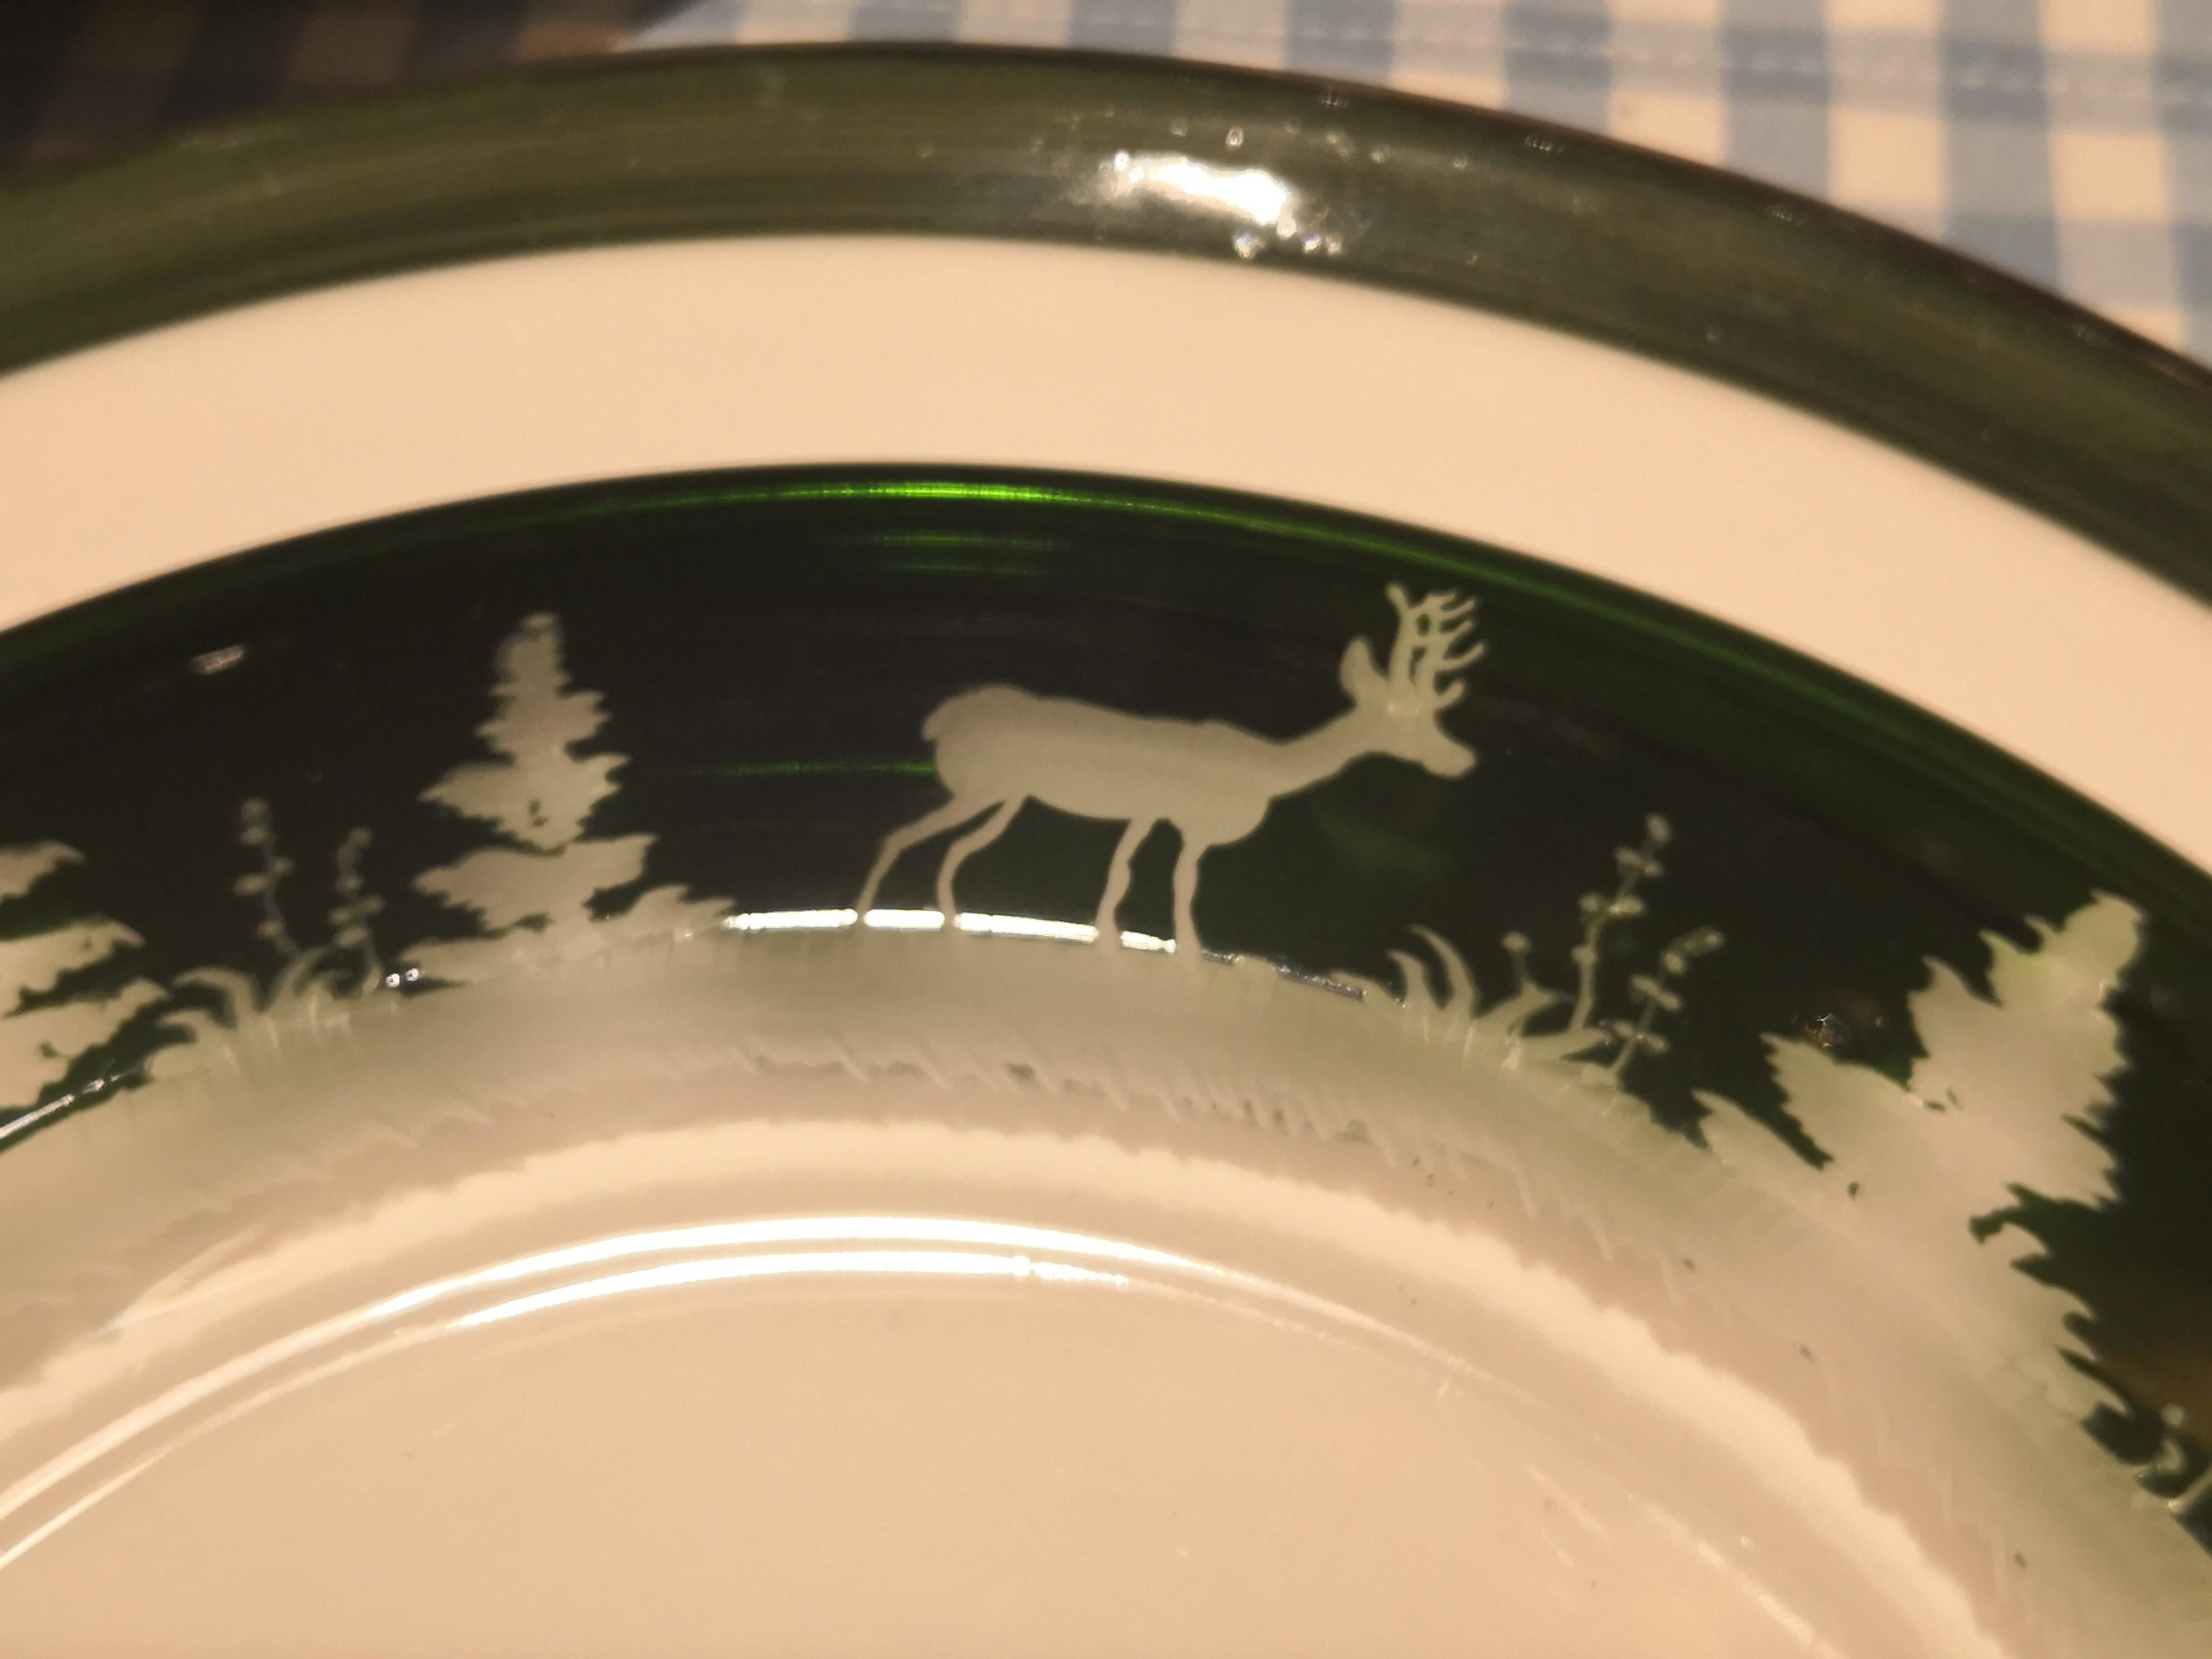 Set aus sechs Tellern in grünem Kristall mit antikem Jagddekor rundherum. Das charmante Schwarzwalddekor ist handgraviert und zeigt ein antikes Dekor aus Rehen, Hasen und Bäumen. Die Glasplatten können in verschiedenen Farben bestellt werden. Alle